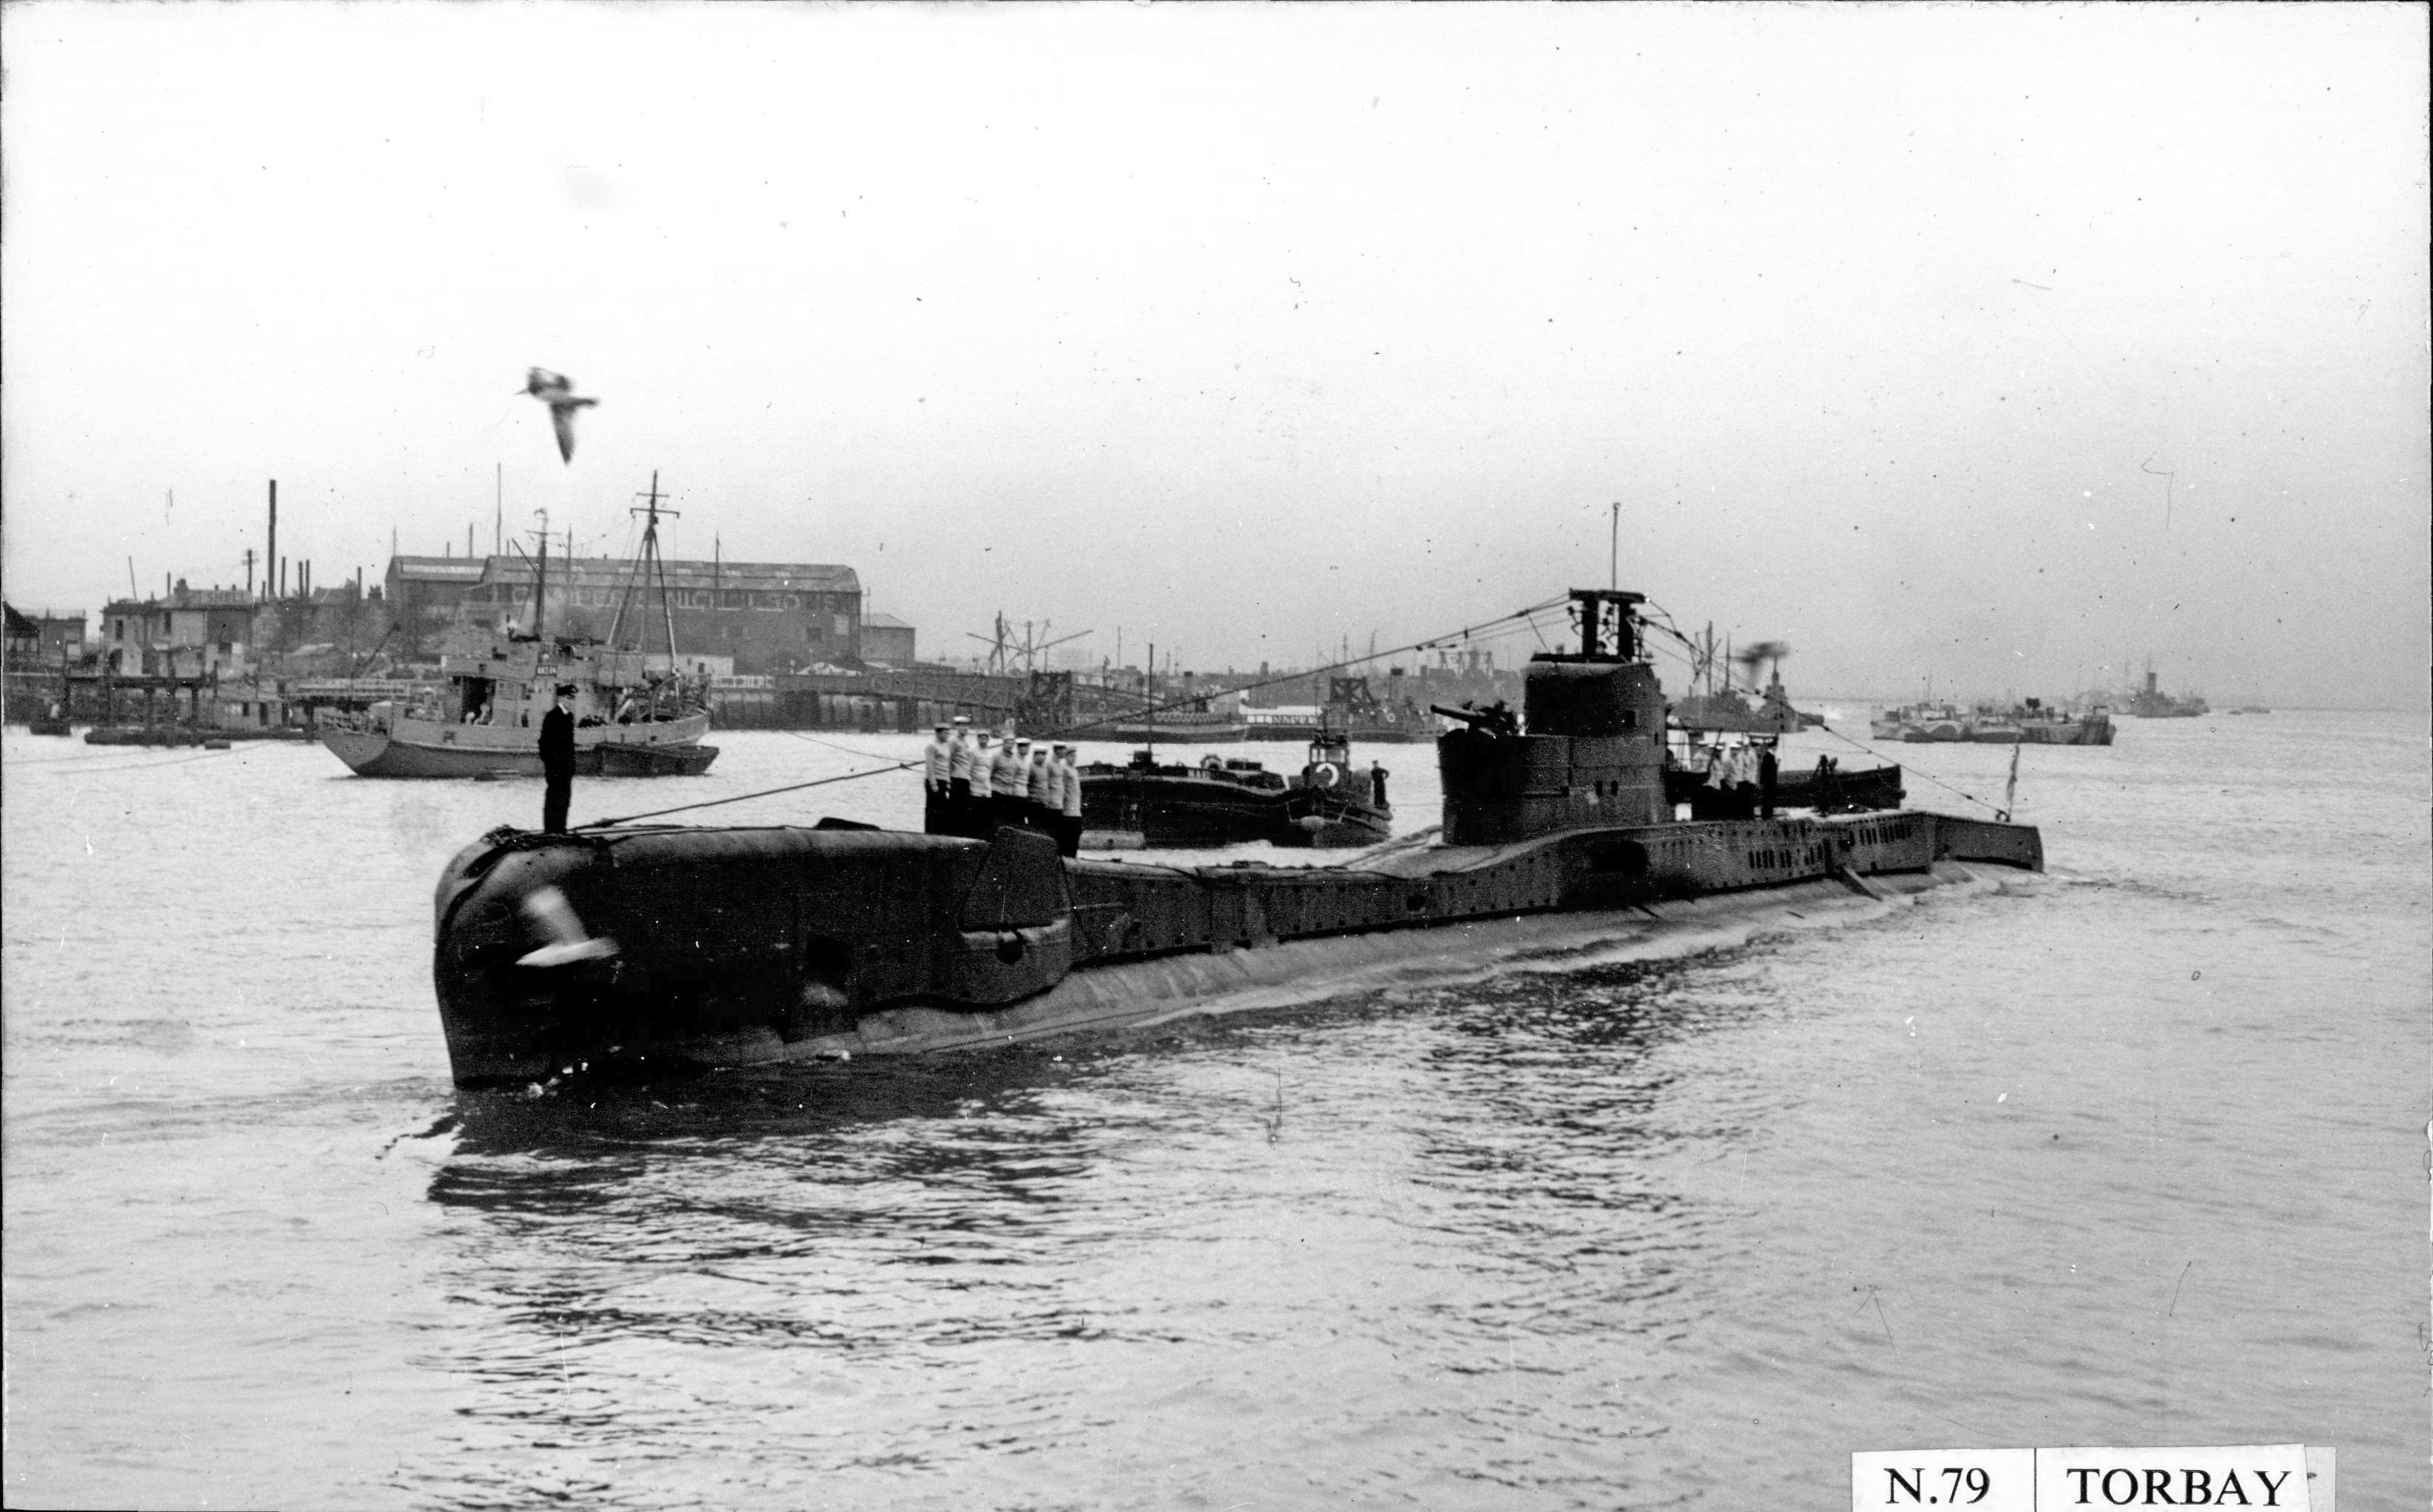 HMS Torbay (N79)